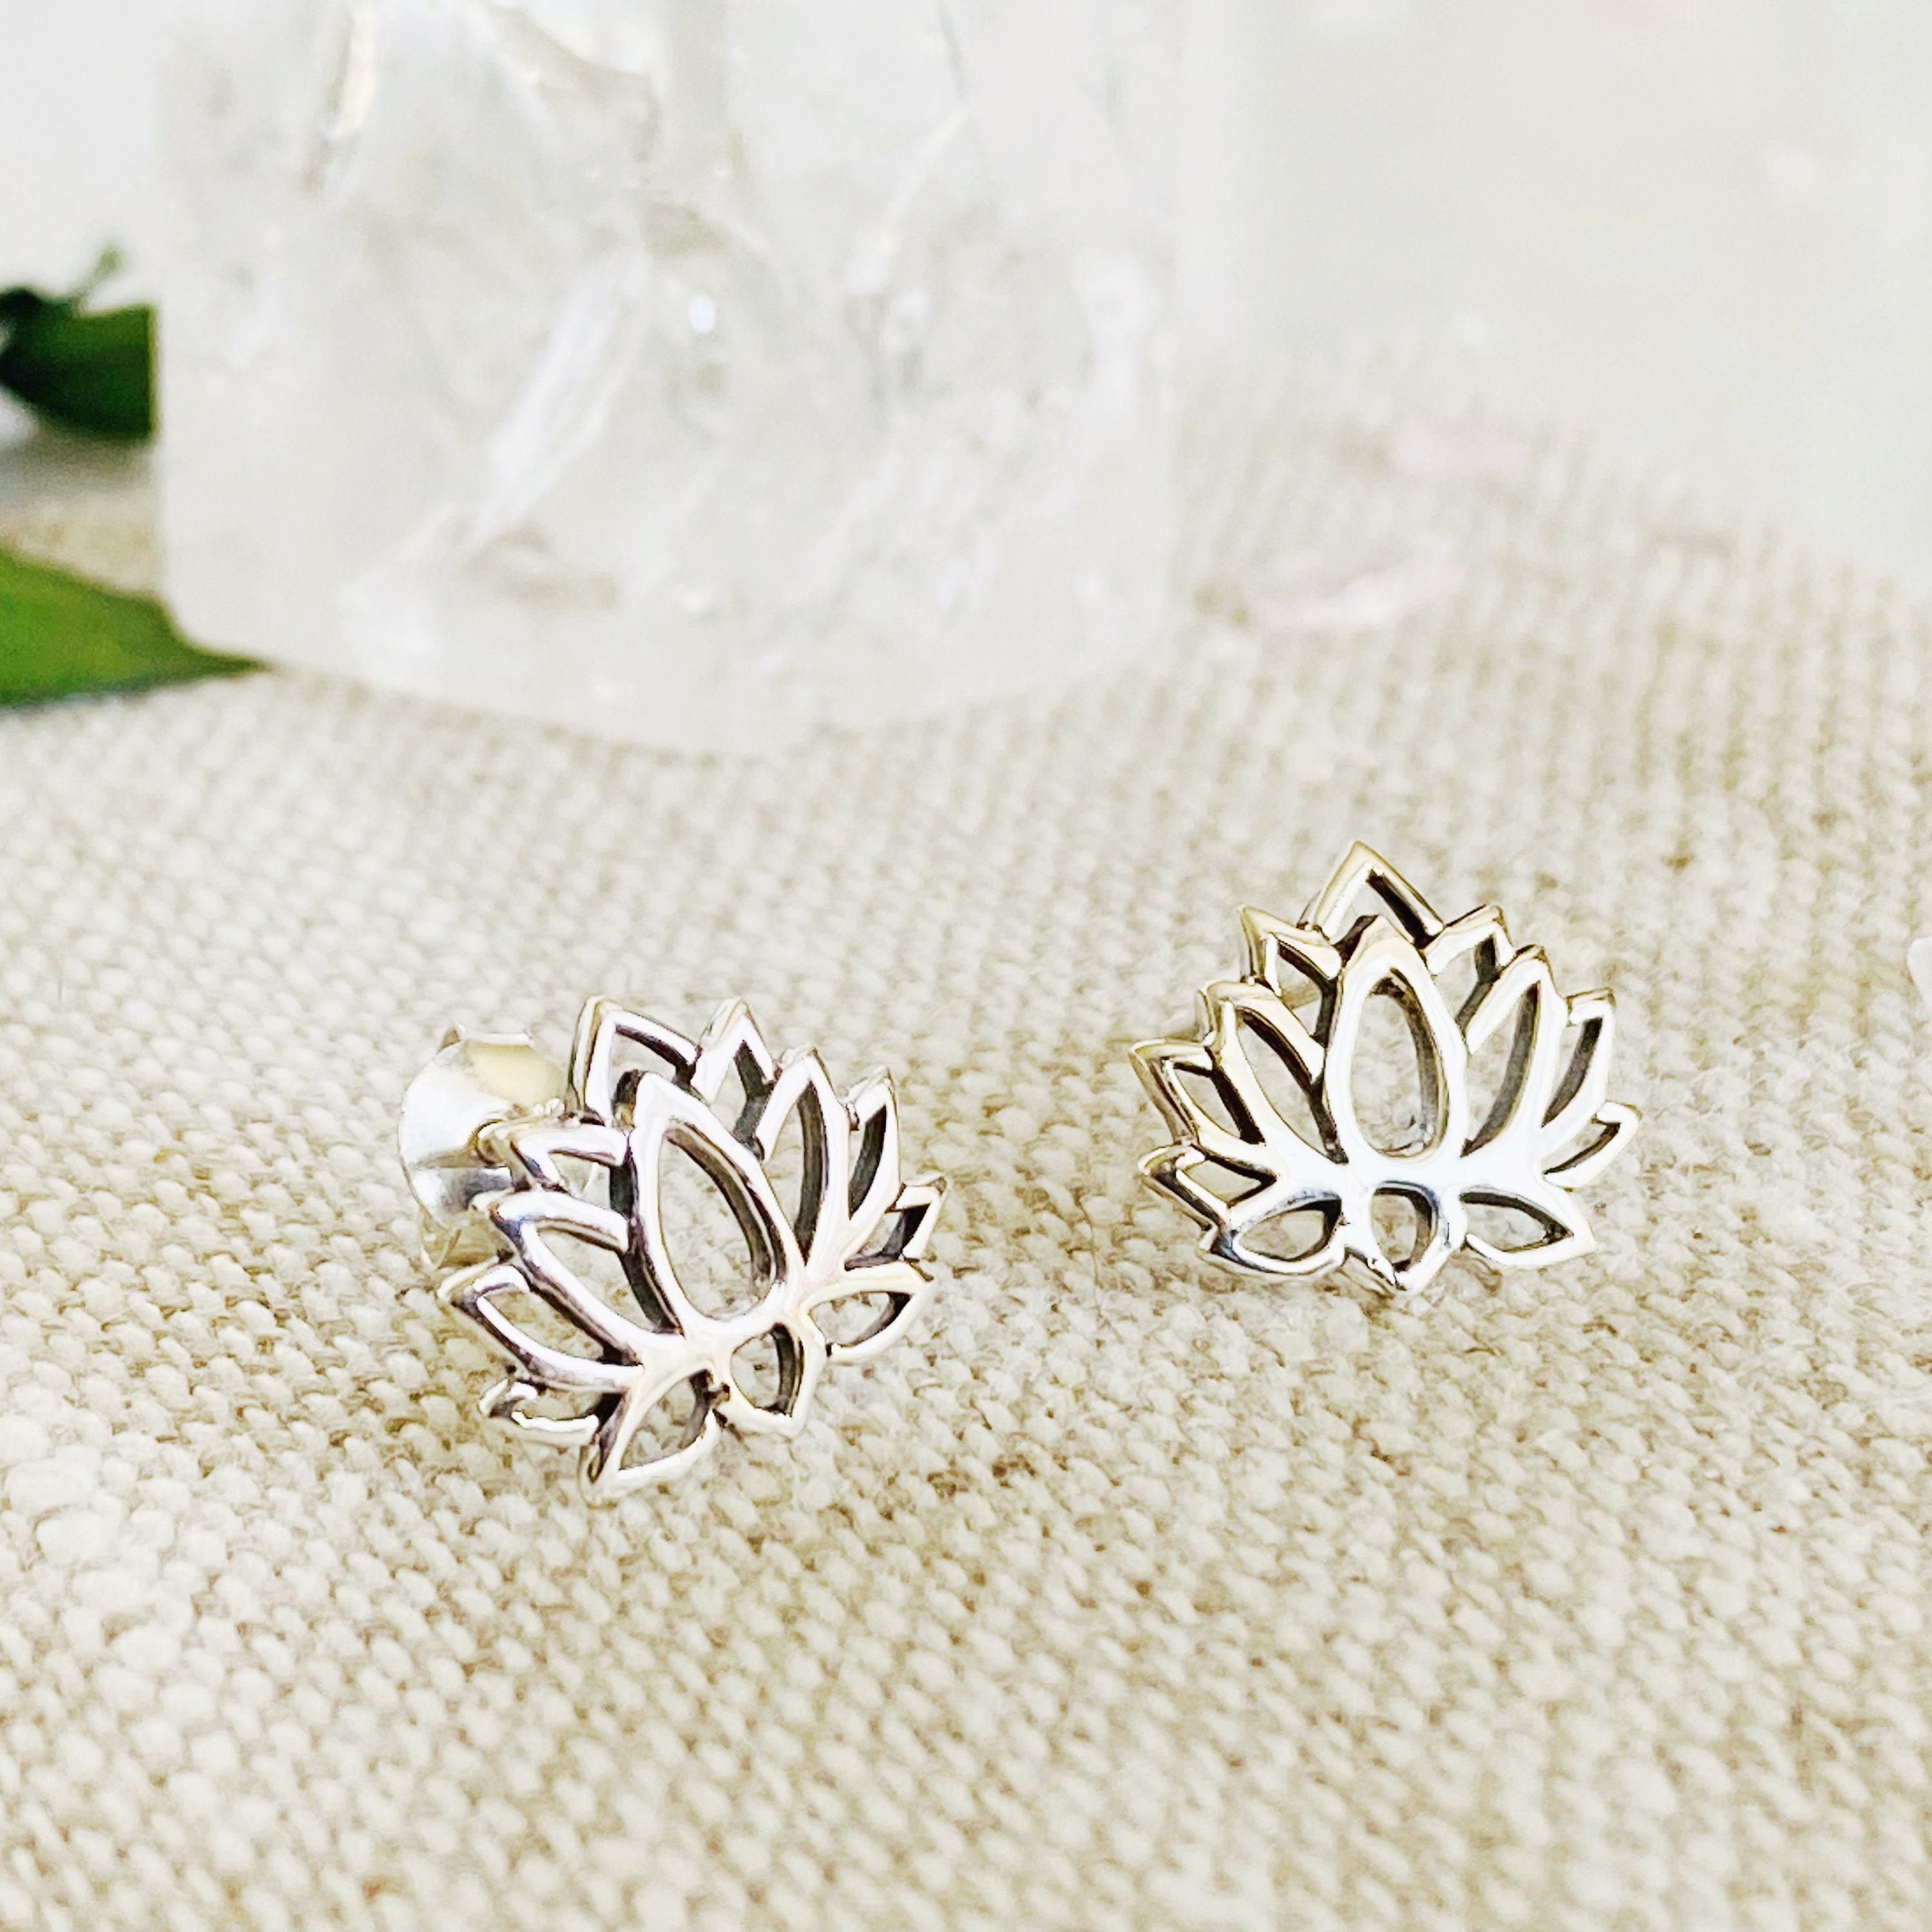 Sterling Silver Flower Earrings, Lotus Flower Silver Studs, Small Silver  Stud Earrings, Nature Earrings, Yoga Jewellery, Dainty Studs - Etsy